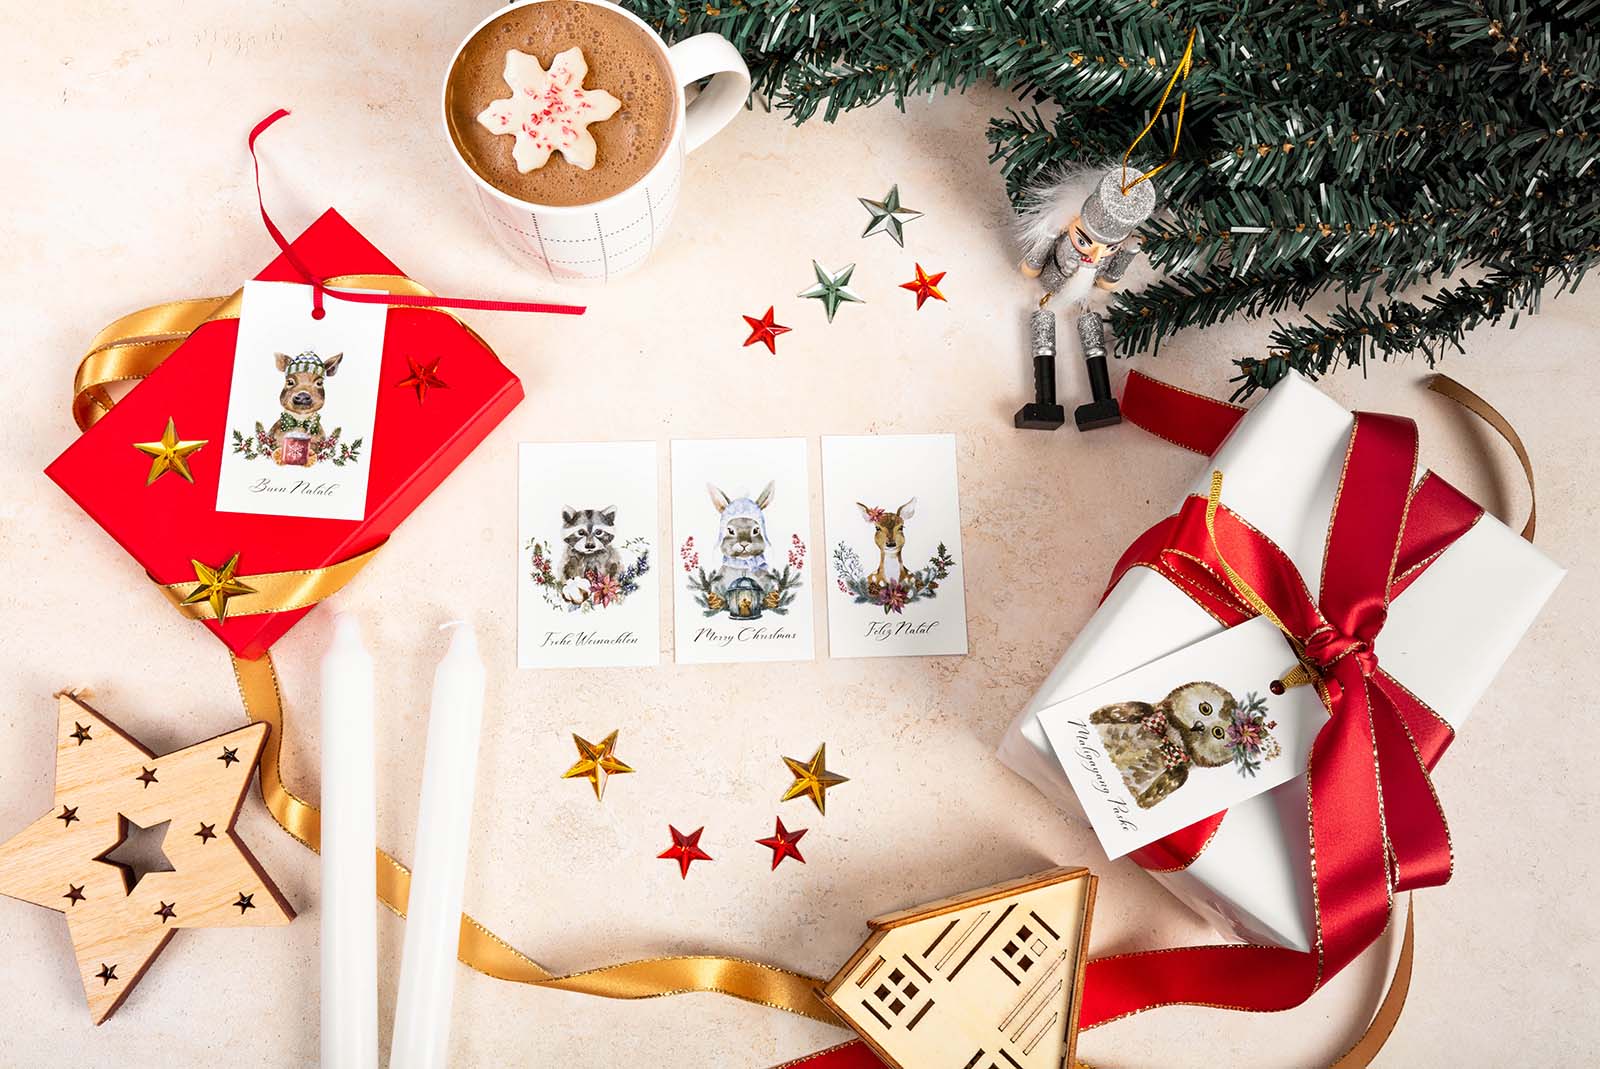 Kangaroo + Kite: Christmas Card Product Photography for a Stationary Brand